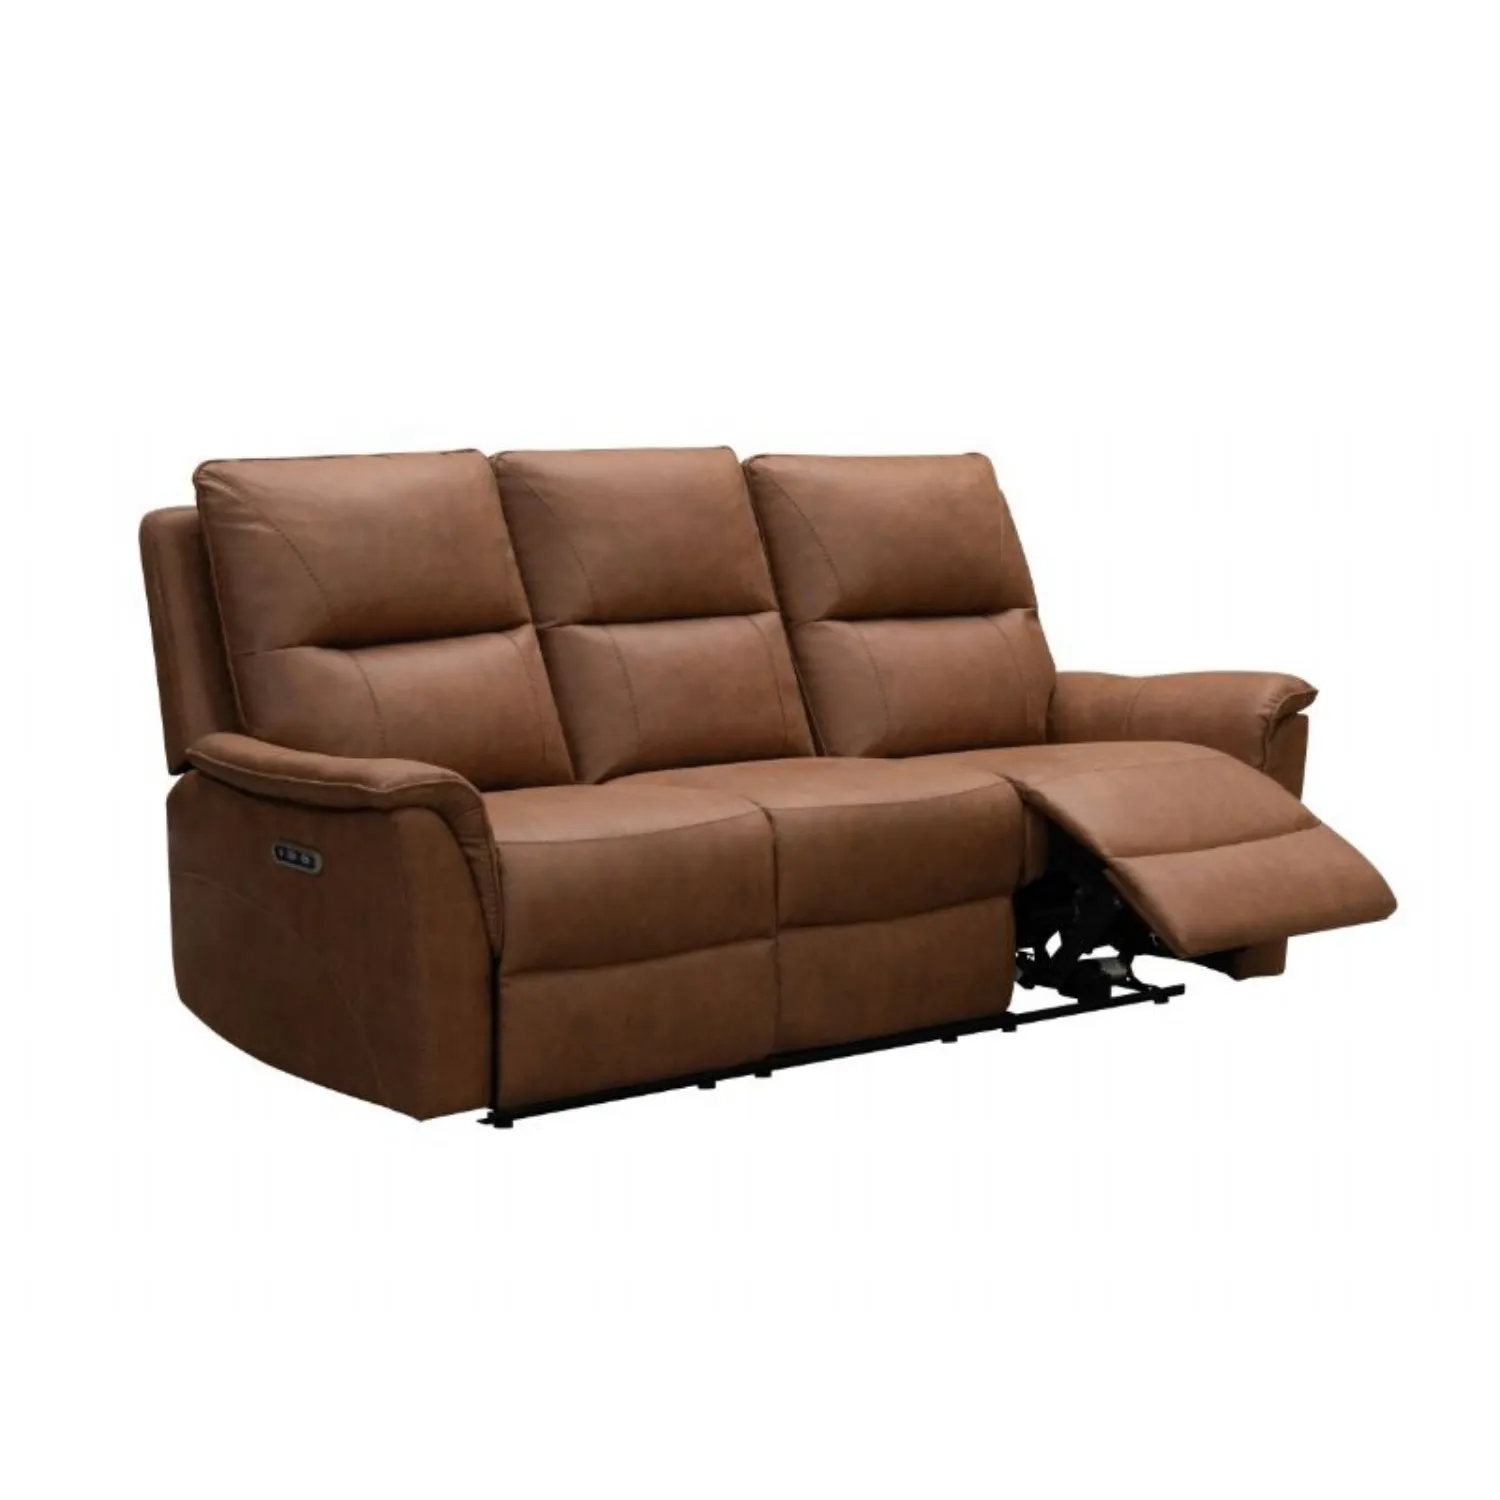 Modern Tan Brown Fabric 3 Seater Electric Reclining Sofa